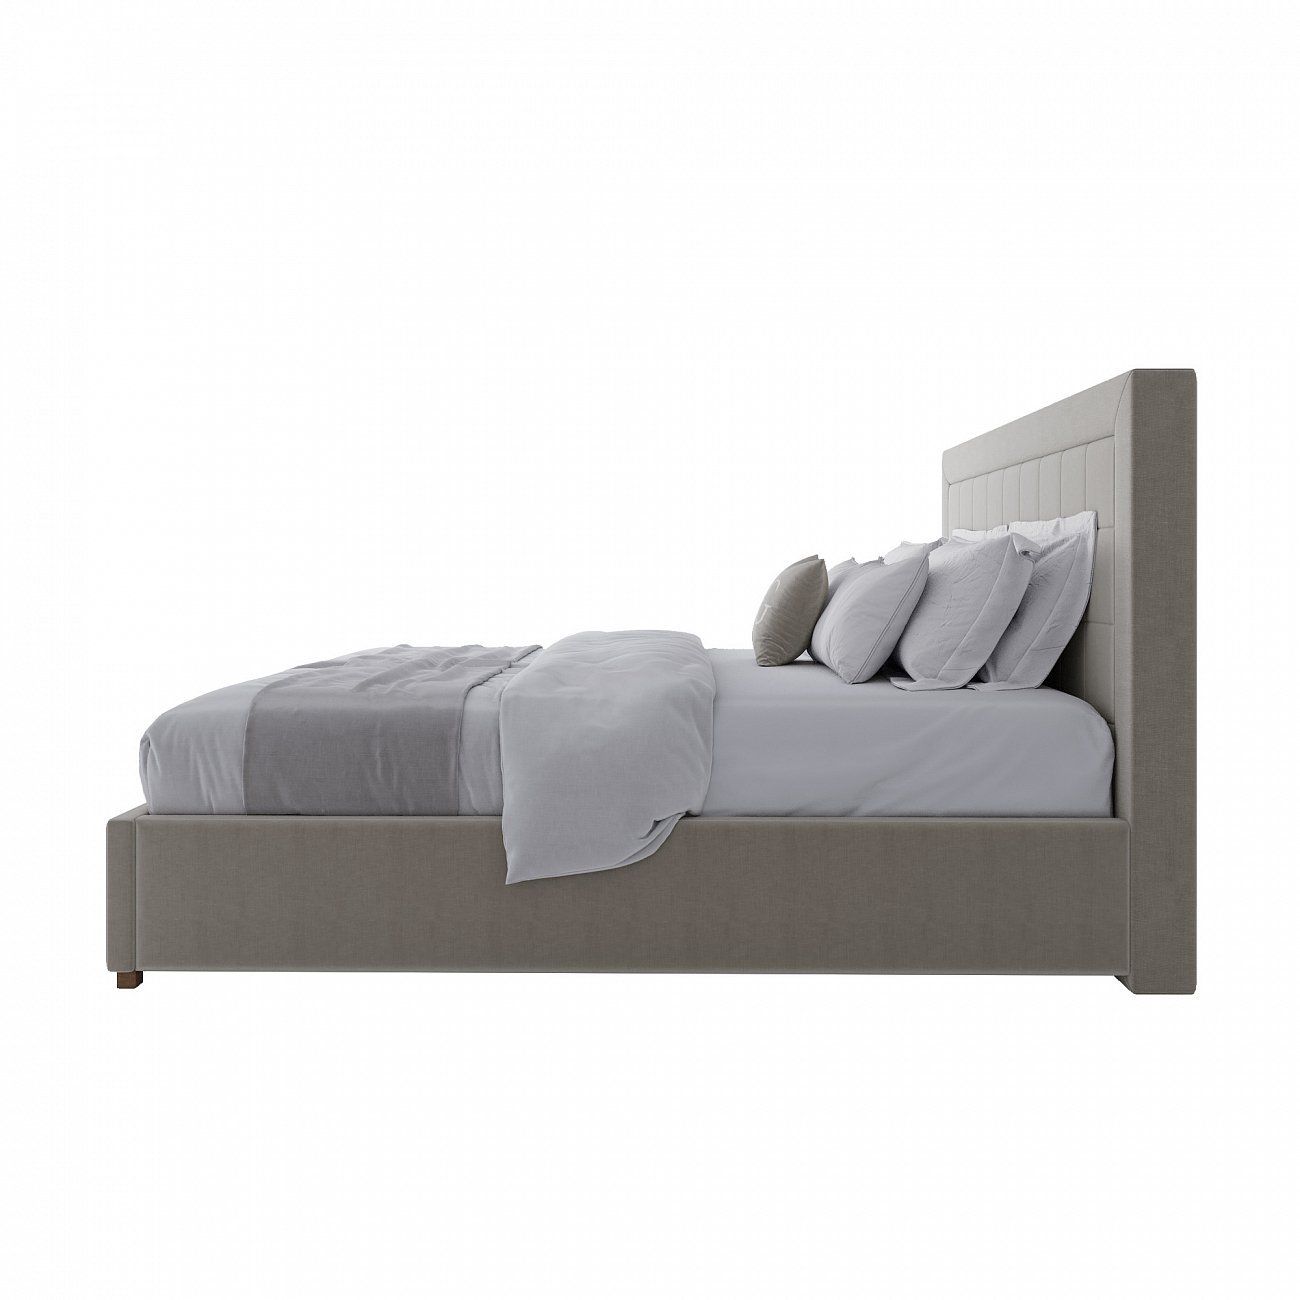 Euro bed 200x200 cm brown-gray Elizabeth